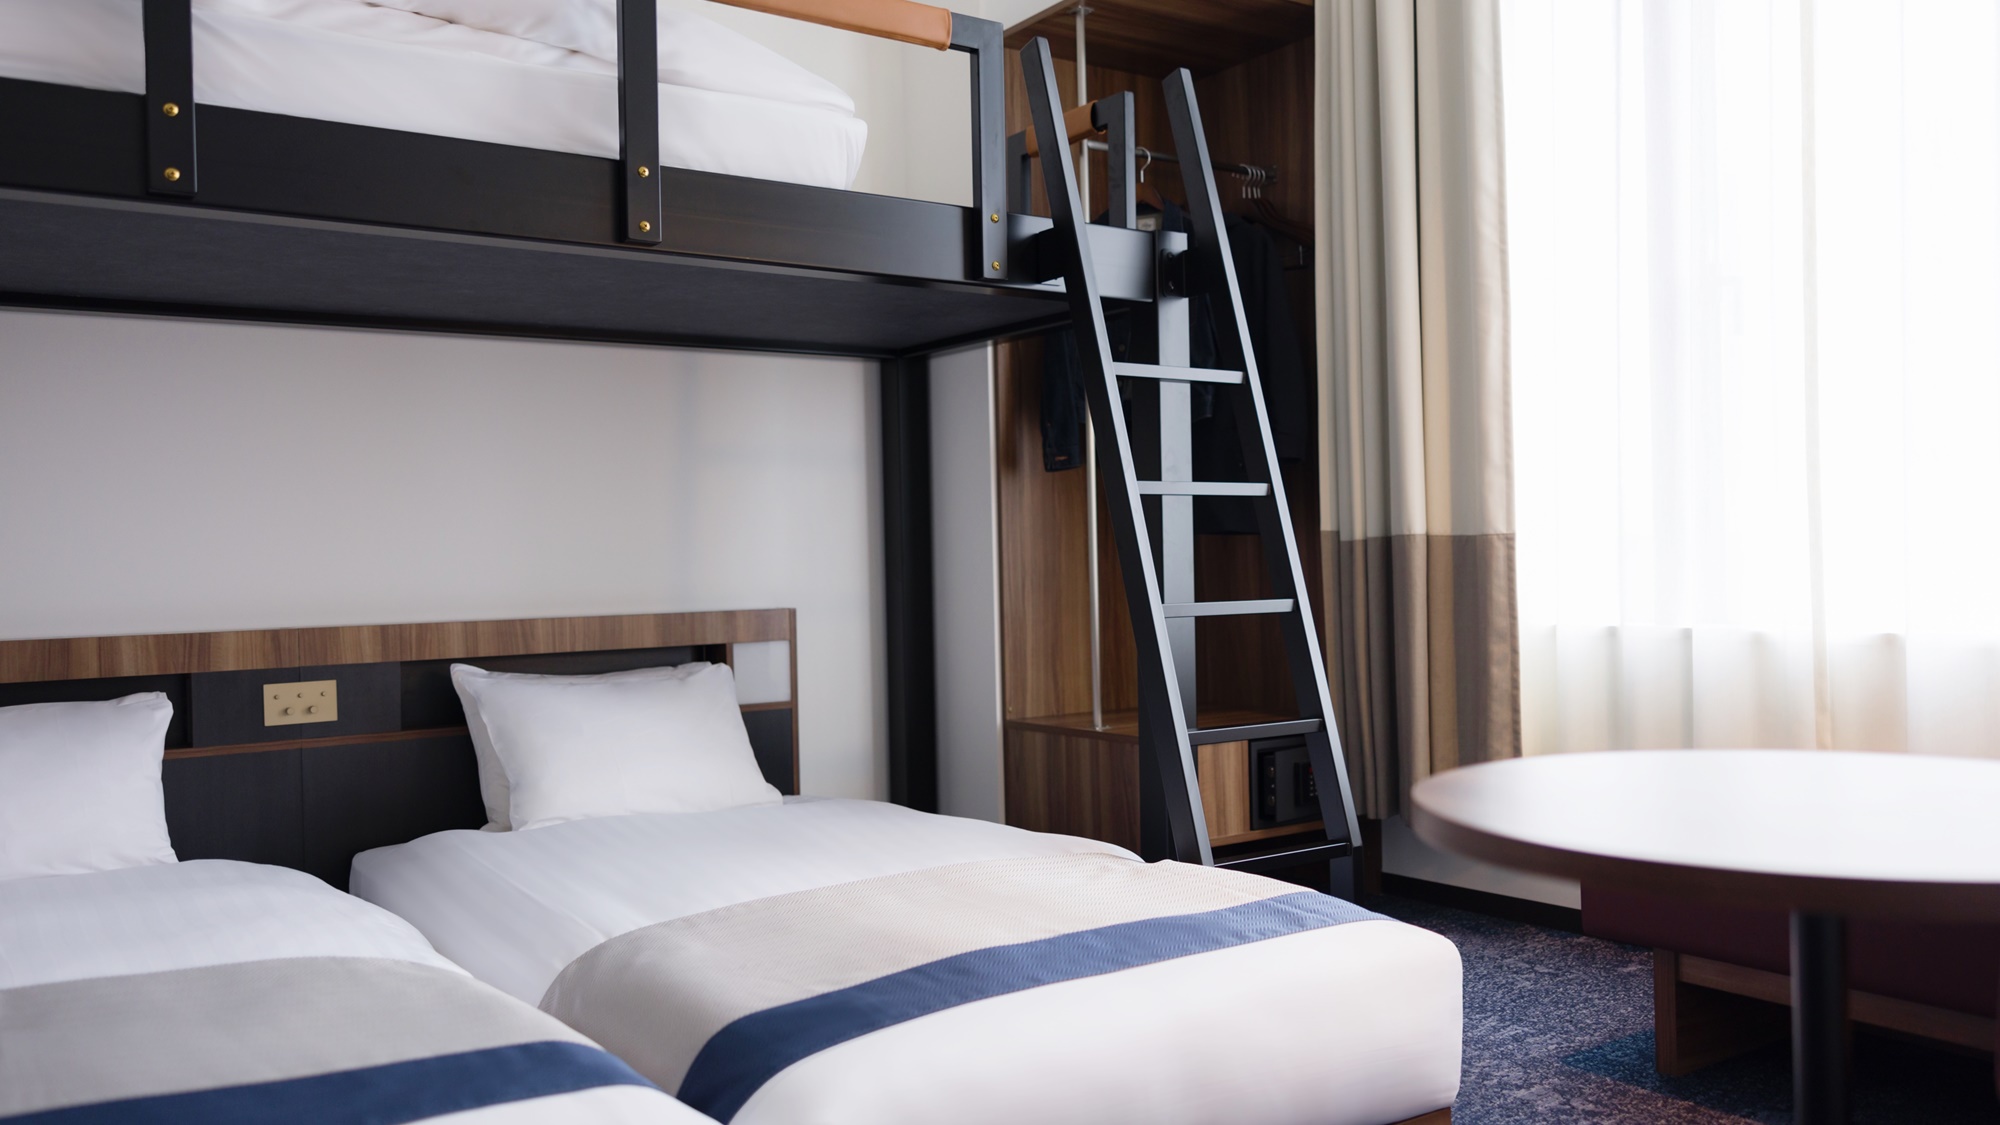 【スーペリアトリプル バンク】ベッド2台とバンクペッド1台で3名まで宿泊可能。